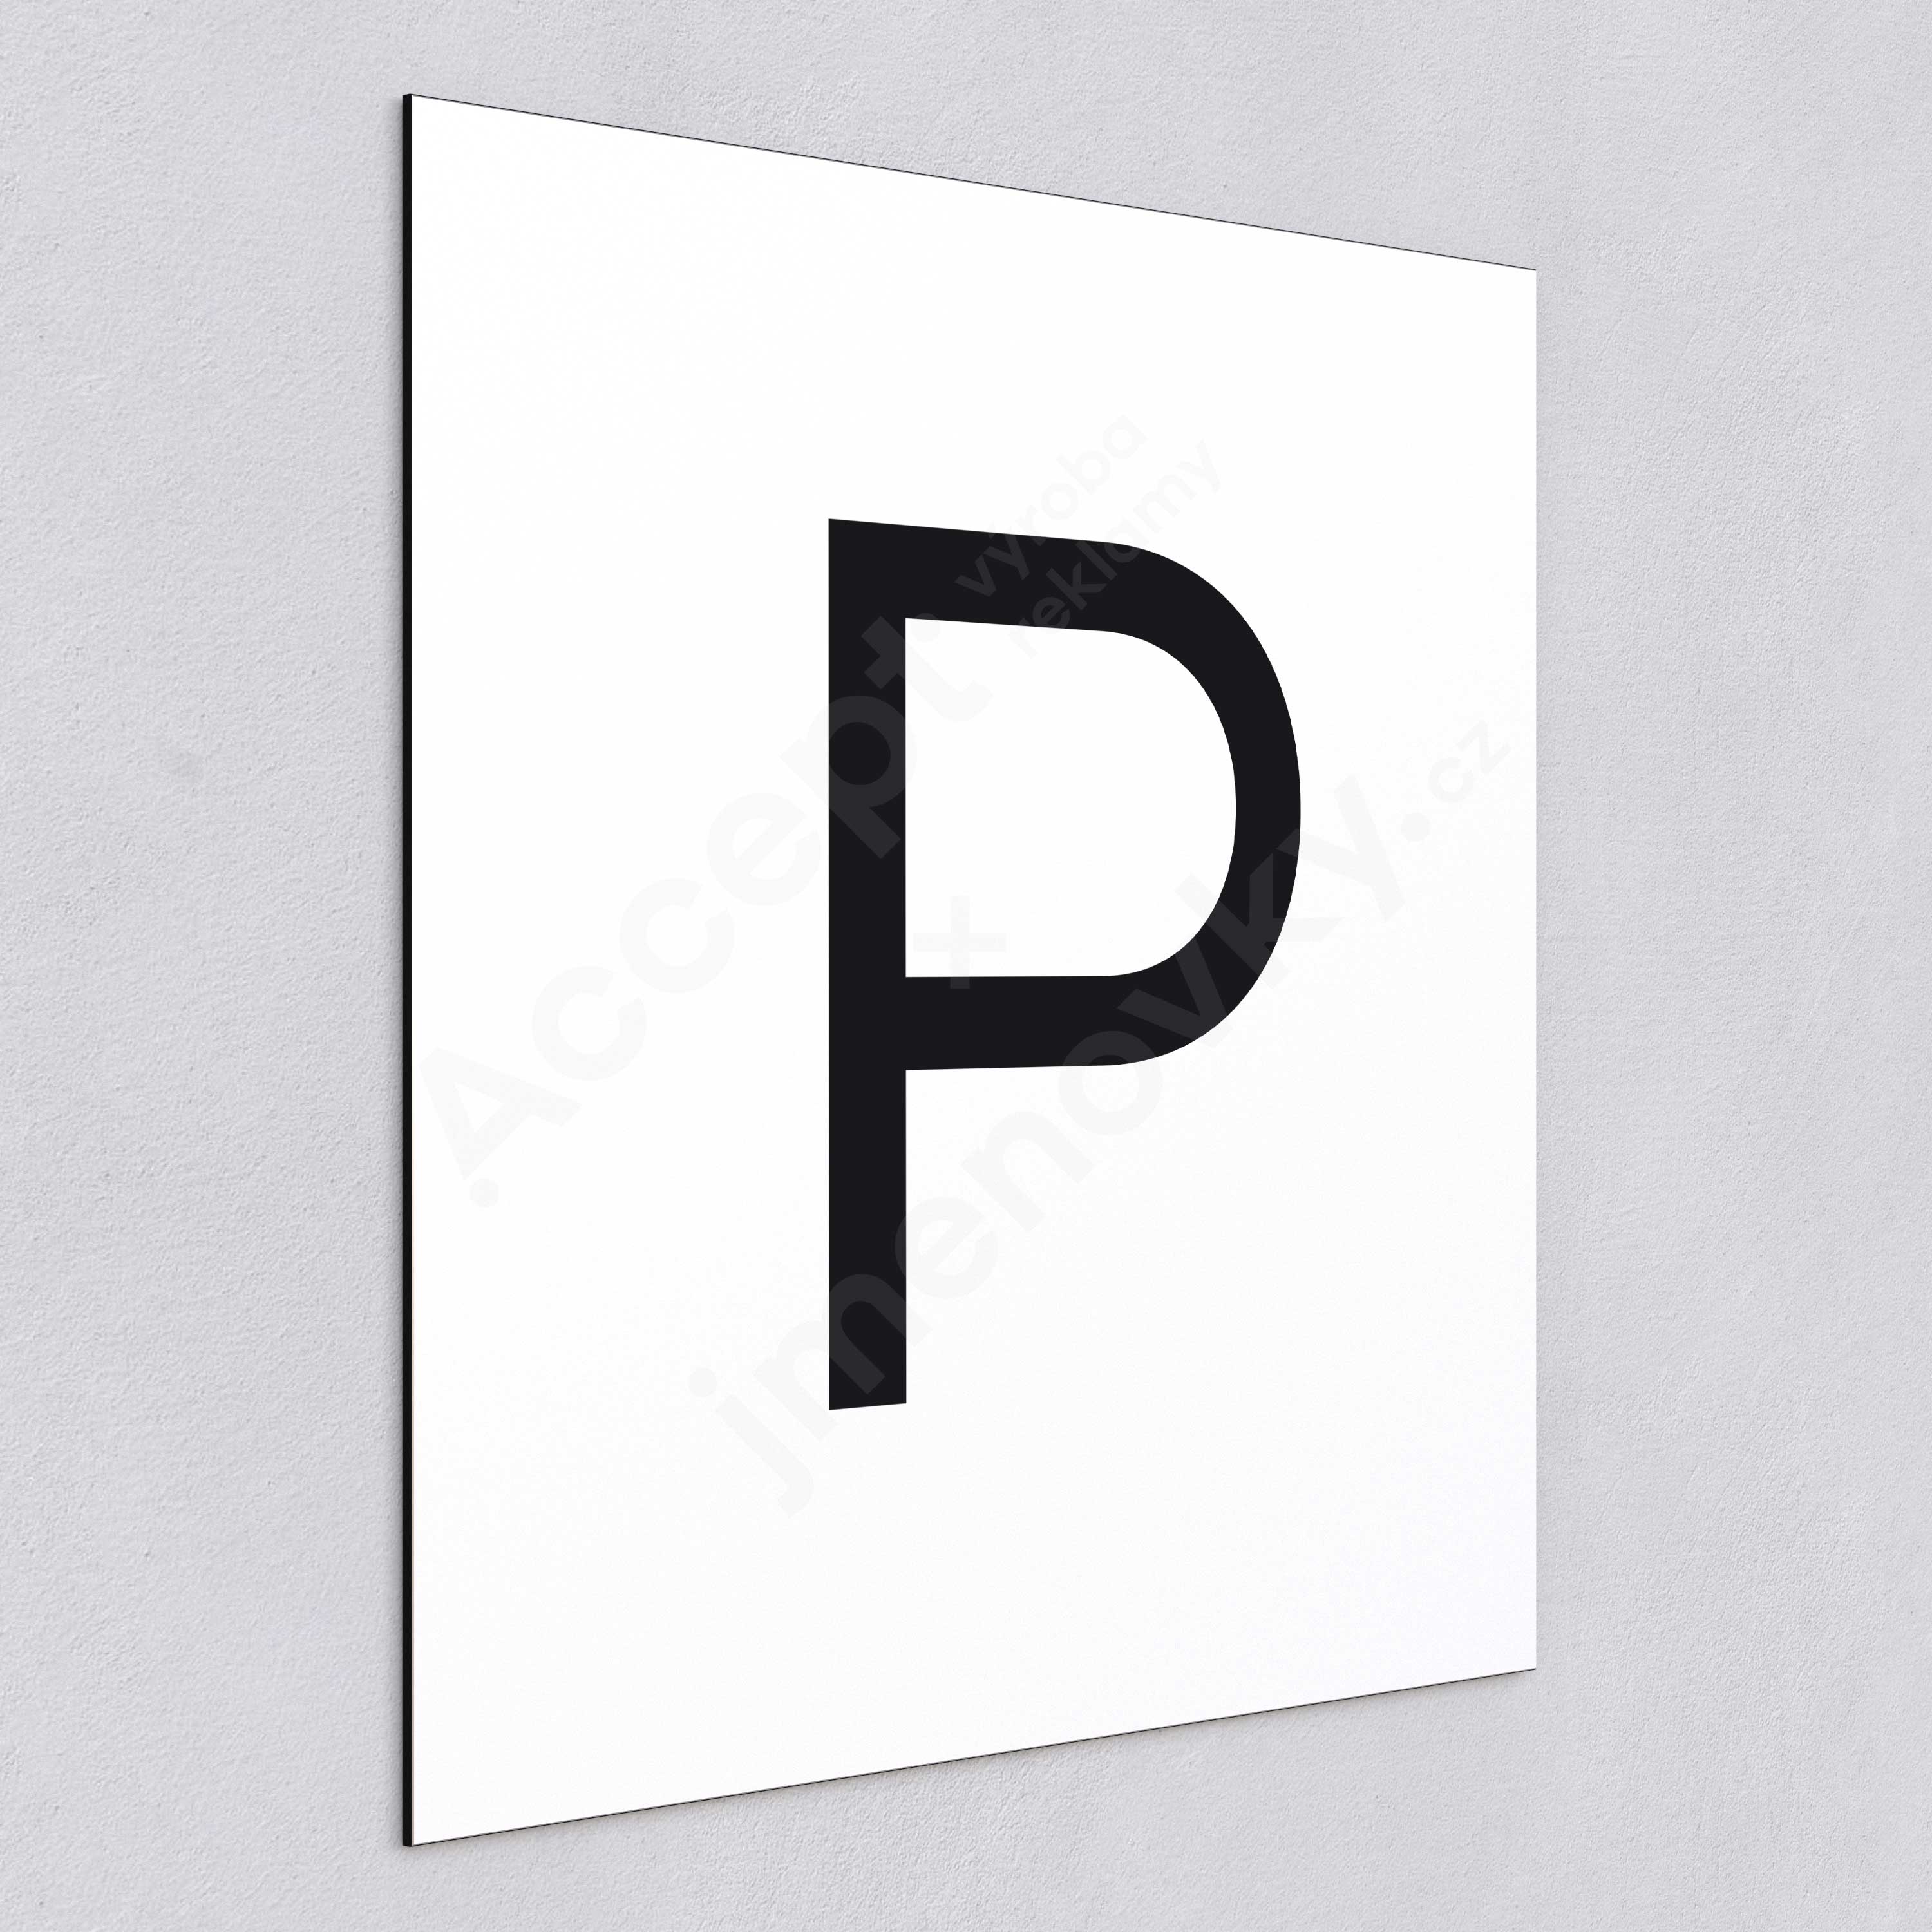 Označení podlaží - písmeno "P" - bílá tabulka - černý popis